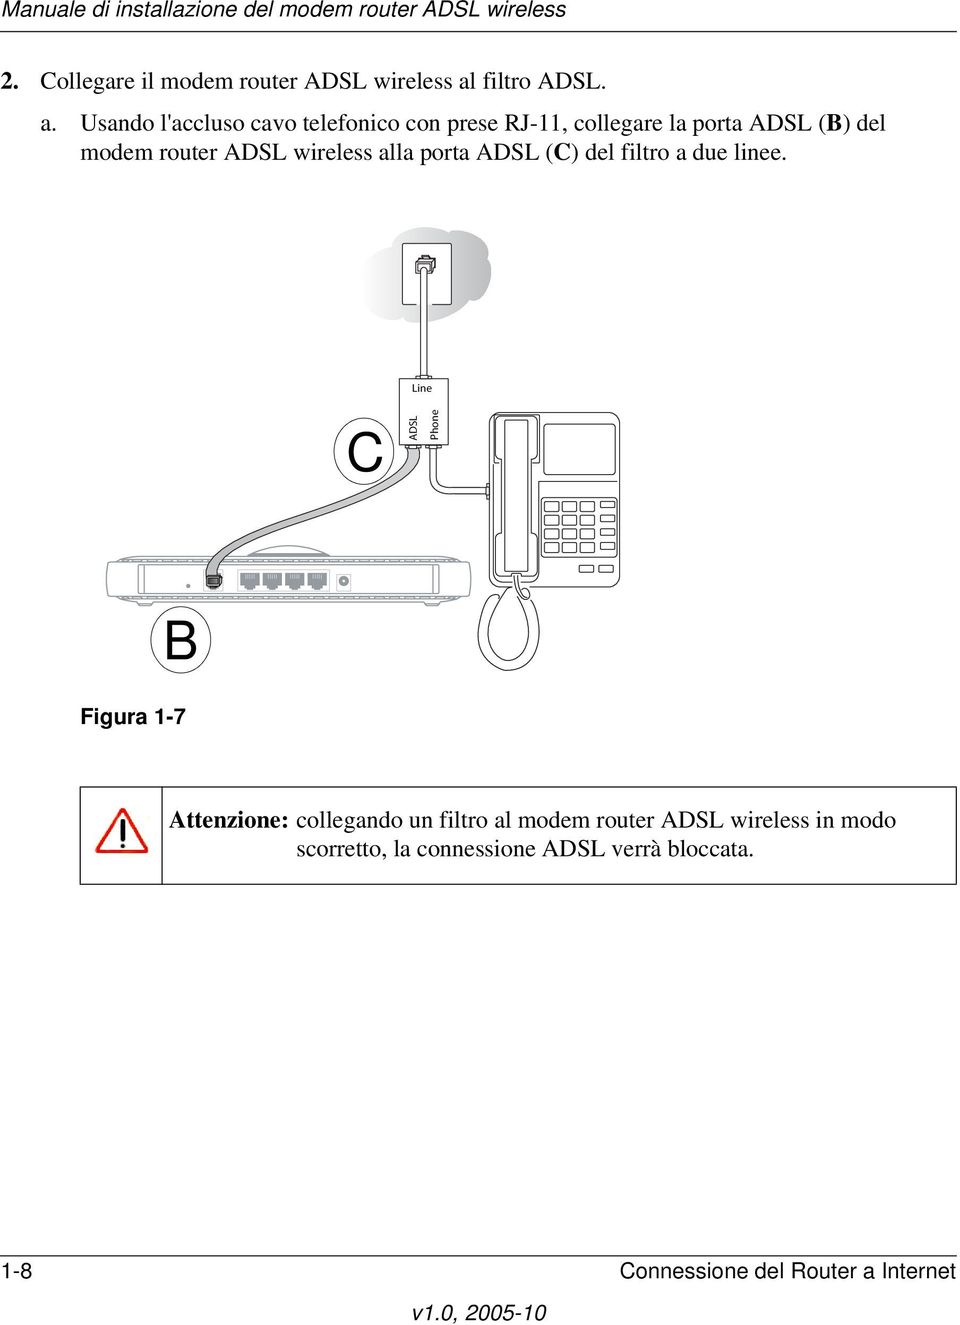 Usando l'accluso cavo telefonico con prese RJ-11, collegare la porta ADSL (B) del modem router